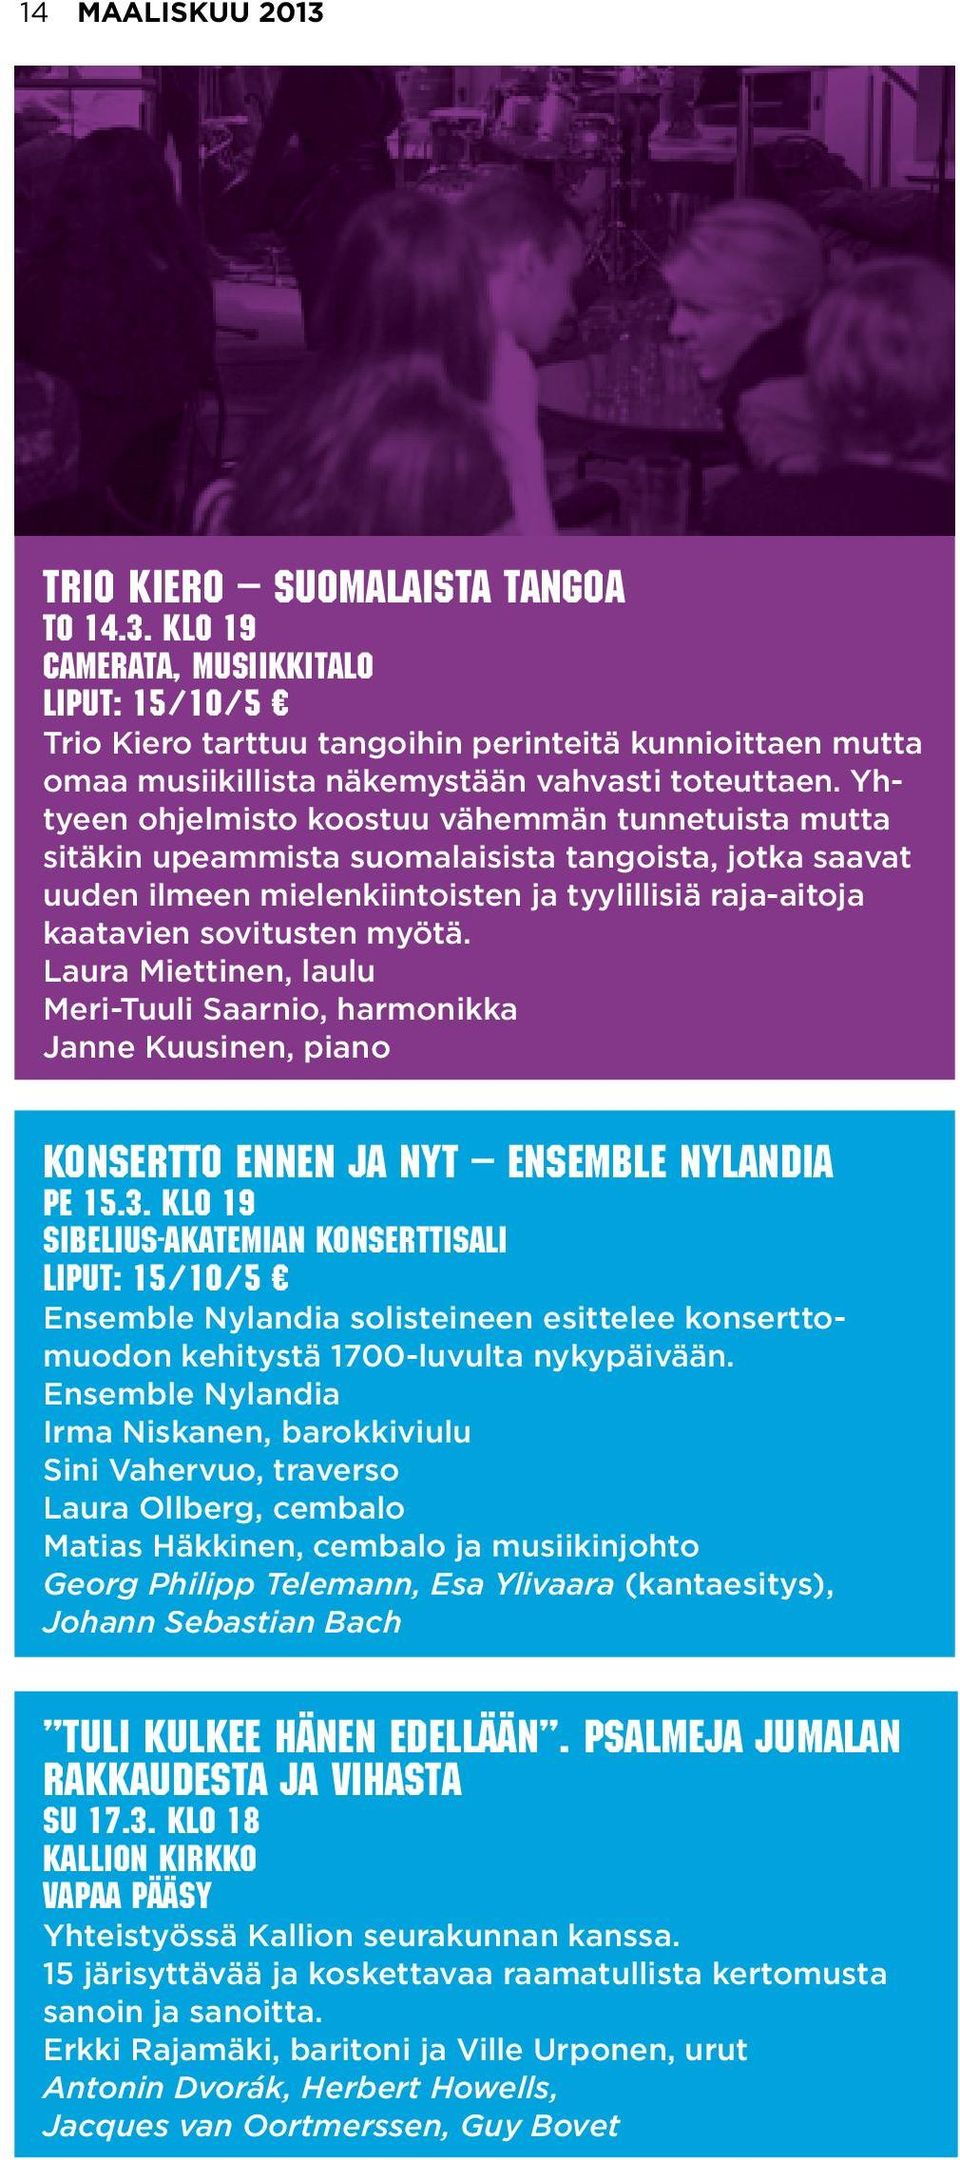 Laura Miettinen, laulu Meri-Tuuli Saarnio, harmonikka Janne Kuusinen, piano Konsertto ennen ja nyt Ensemble Nylandia pe 15.3.